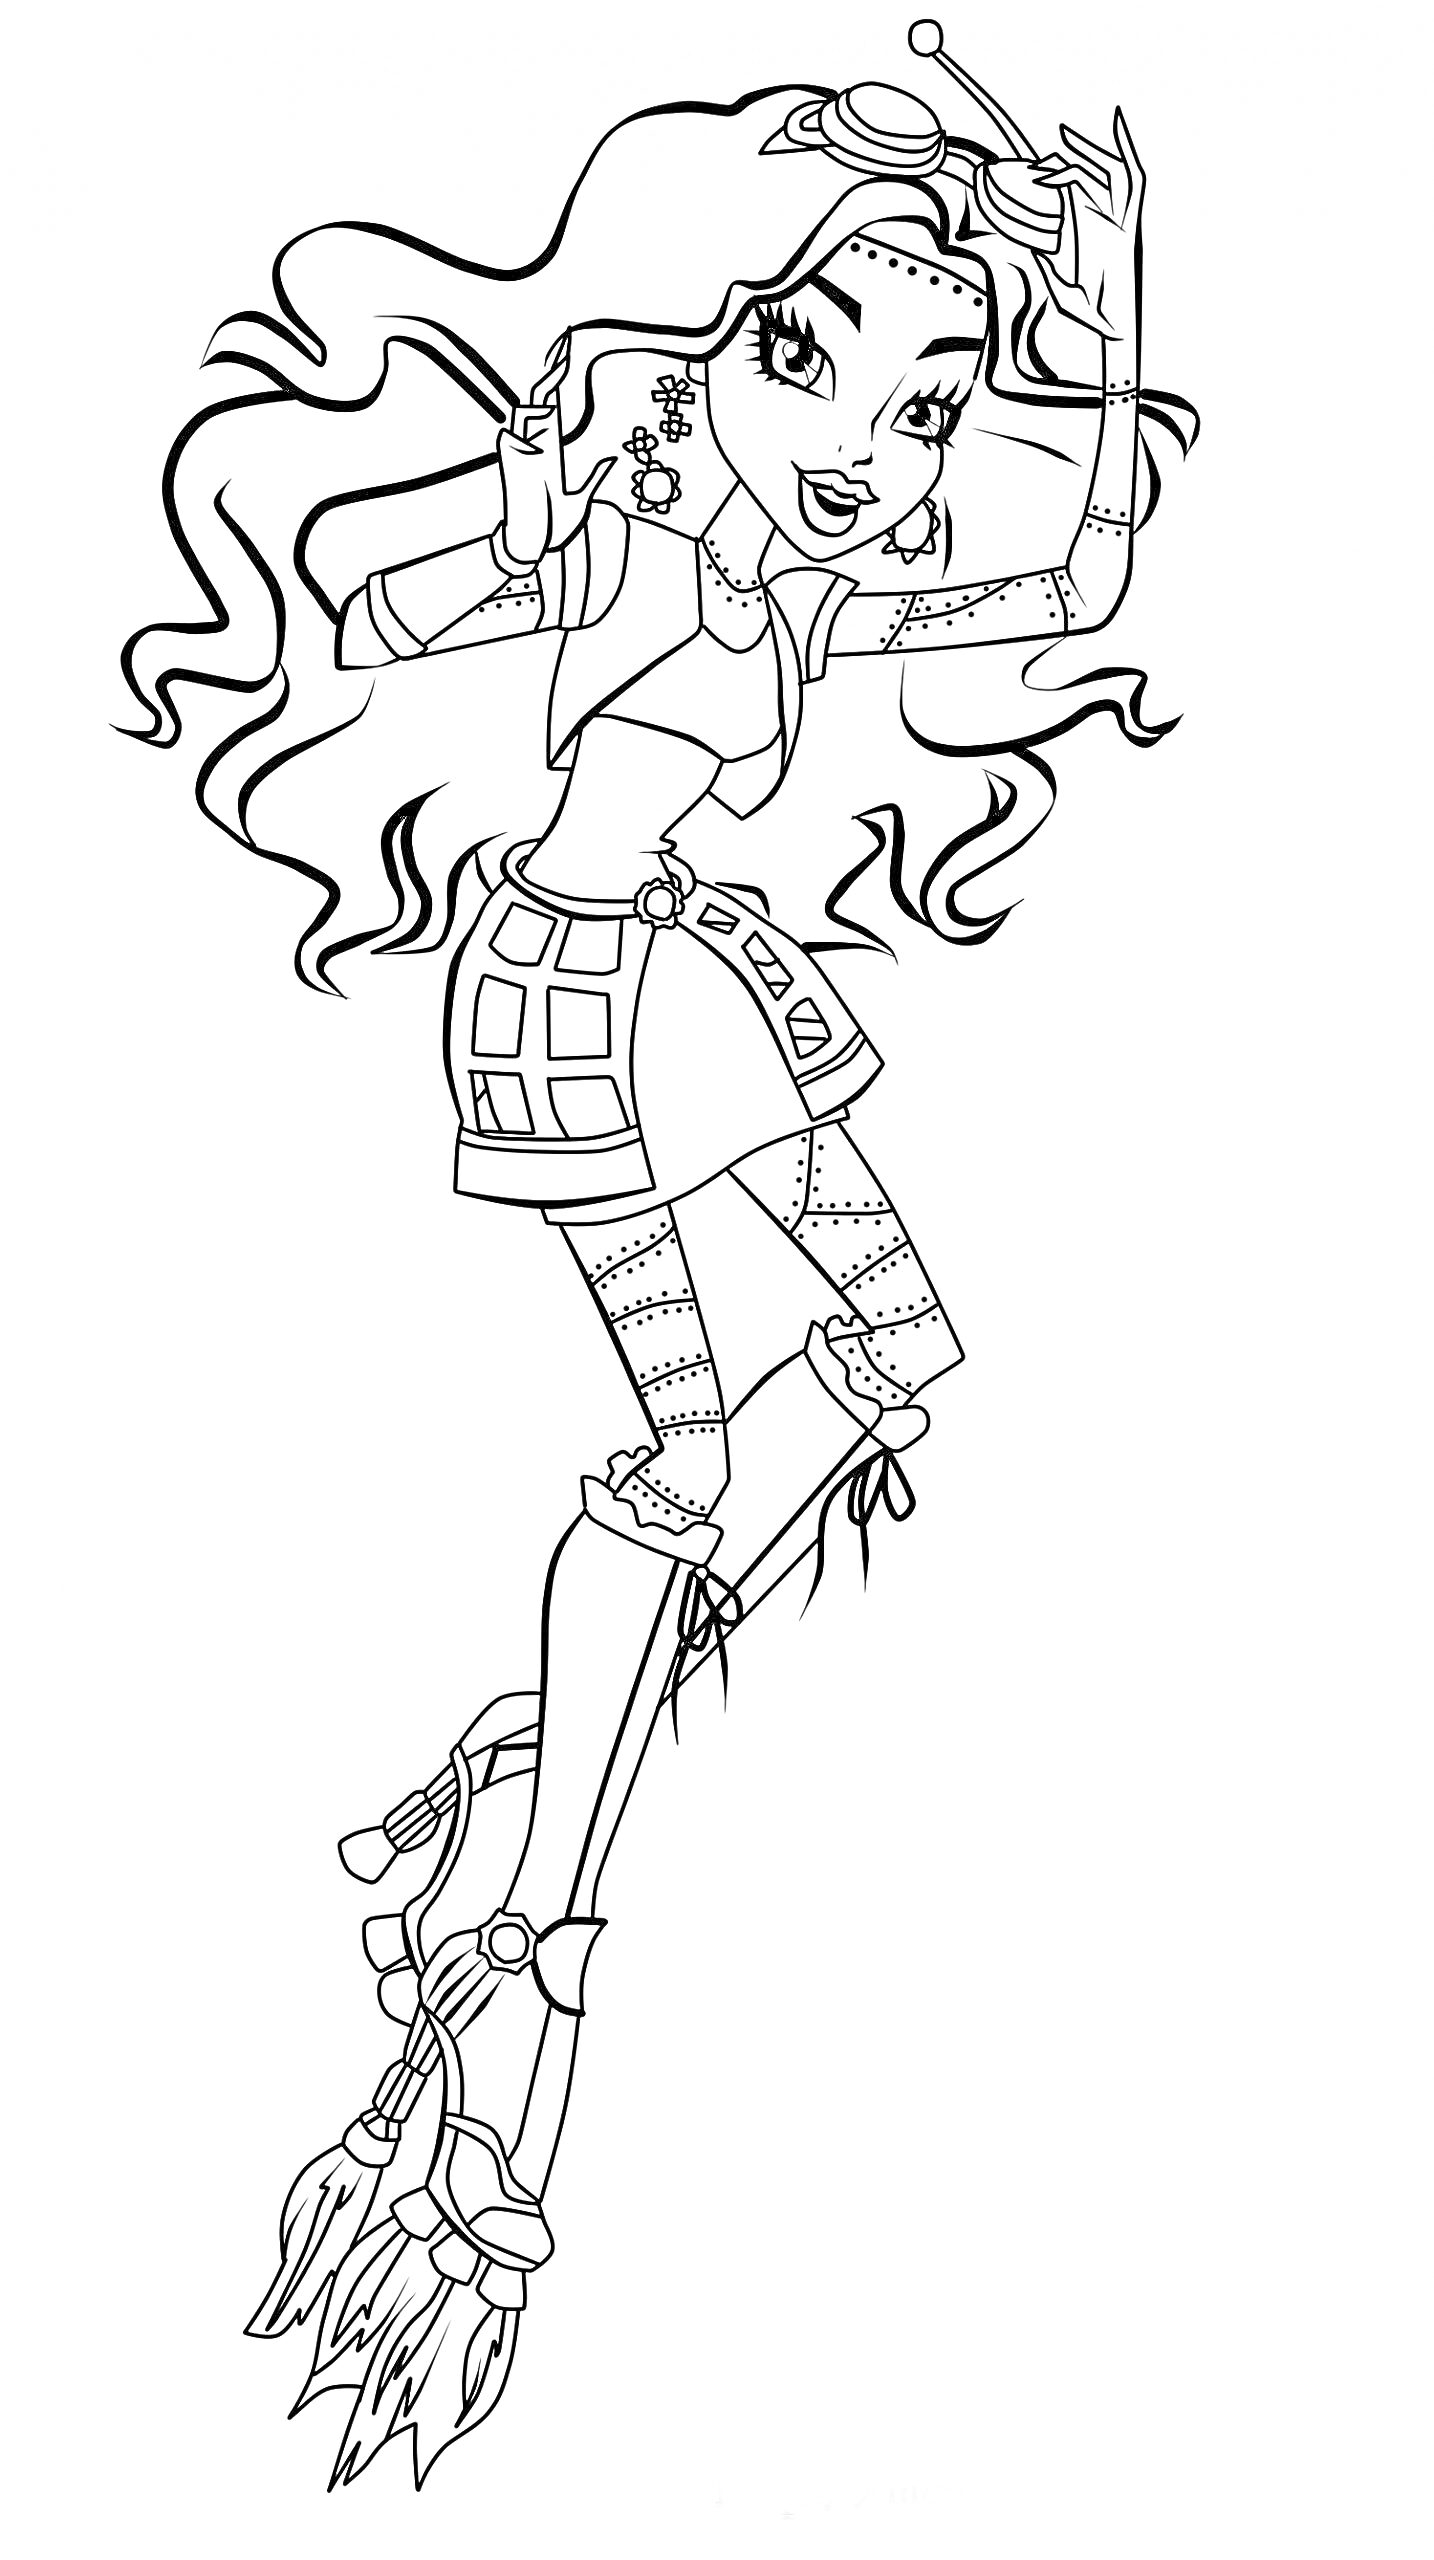 Раскраска Девочка с длинными волнистыми волосами в костюме с элементами шестеренок и патчей, прыгающая с реактивными ботинками.